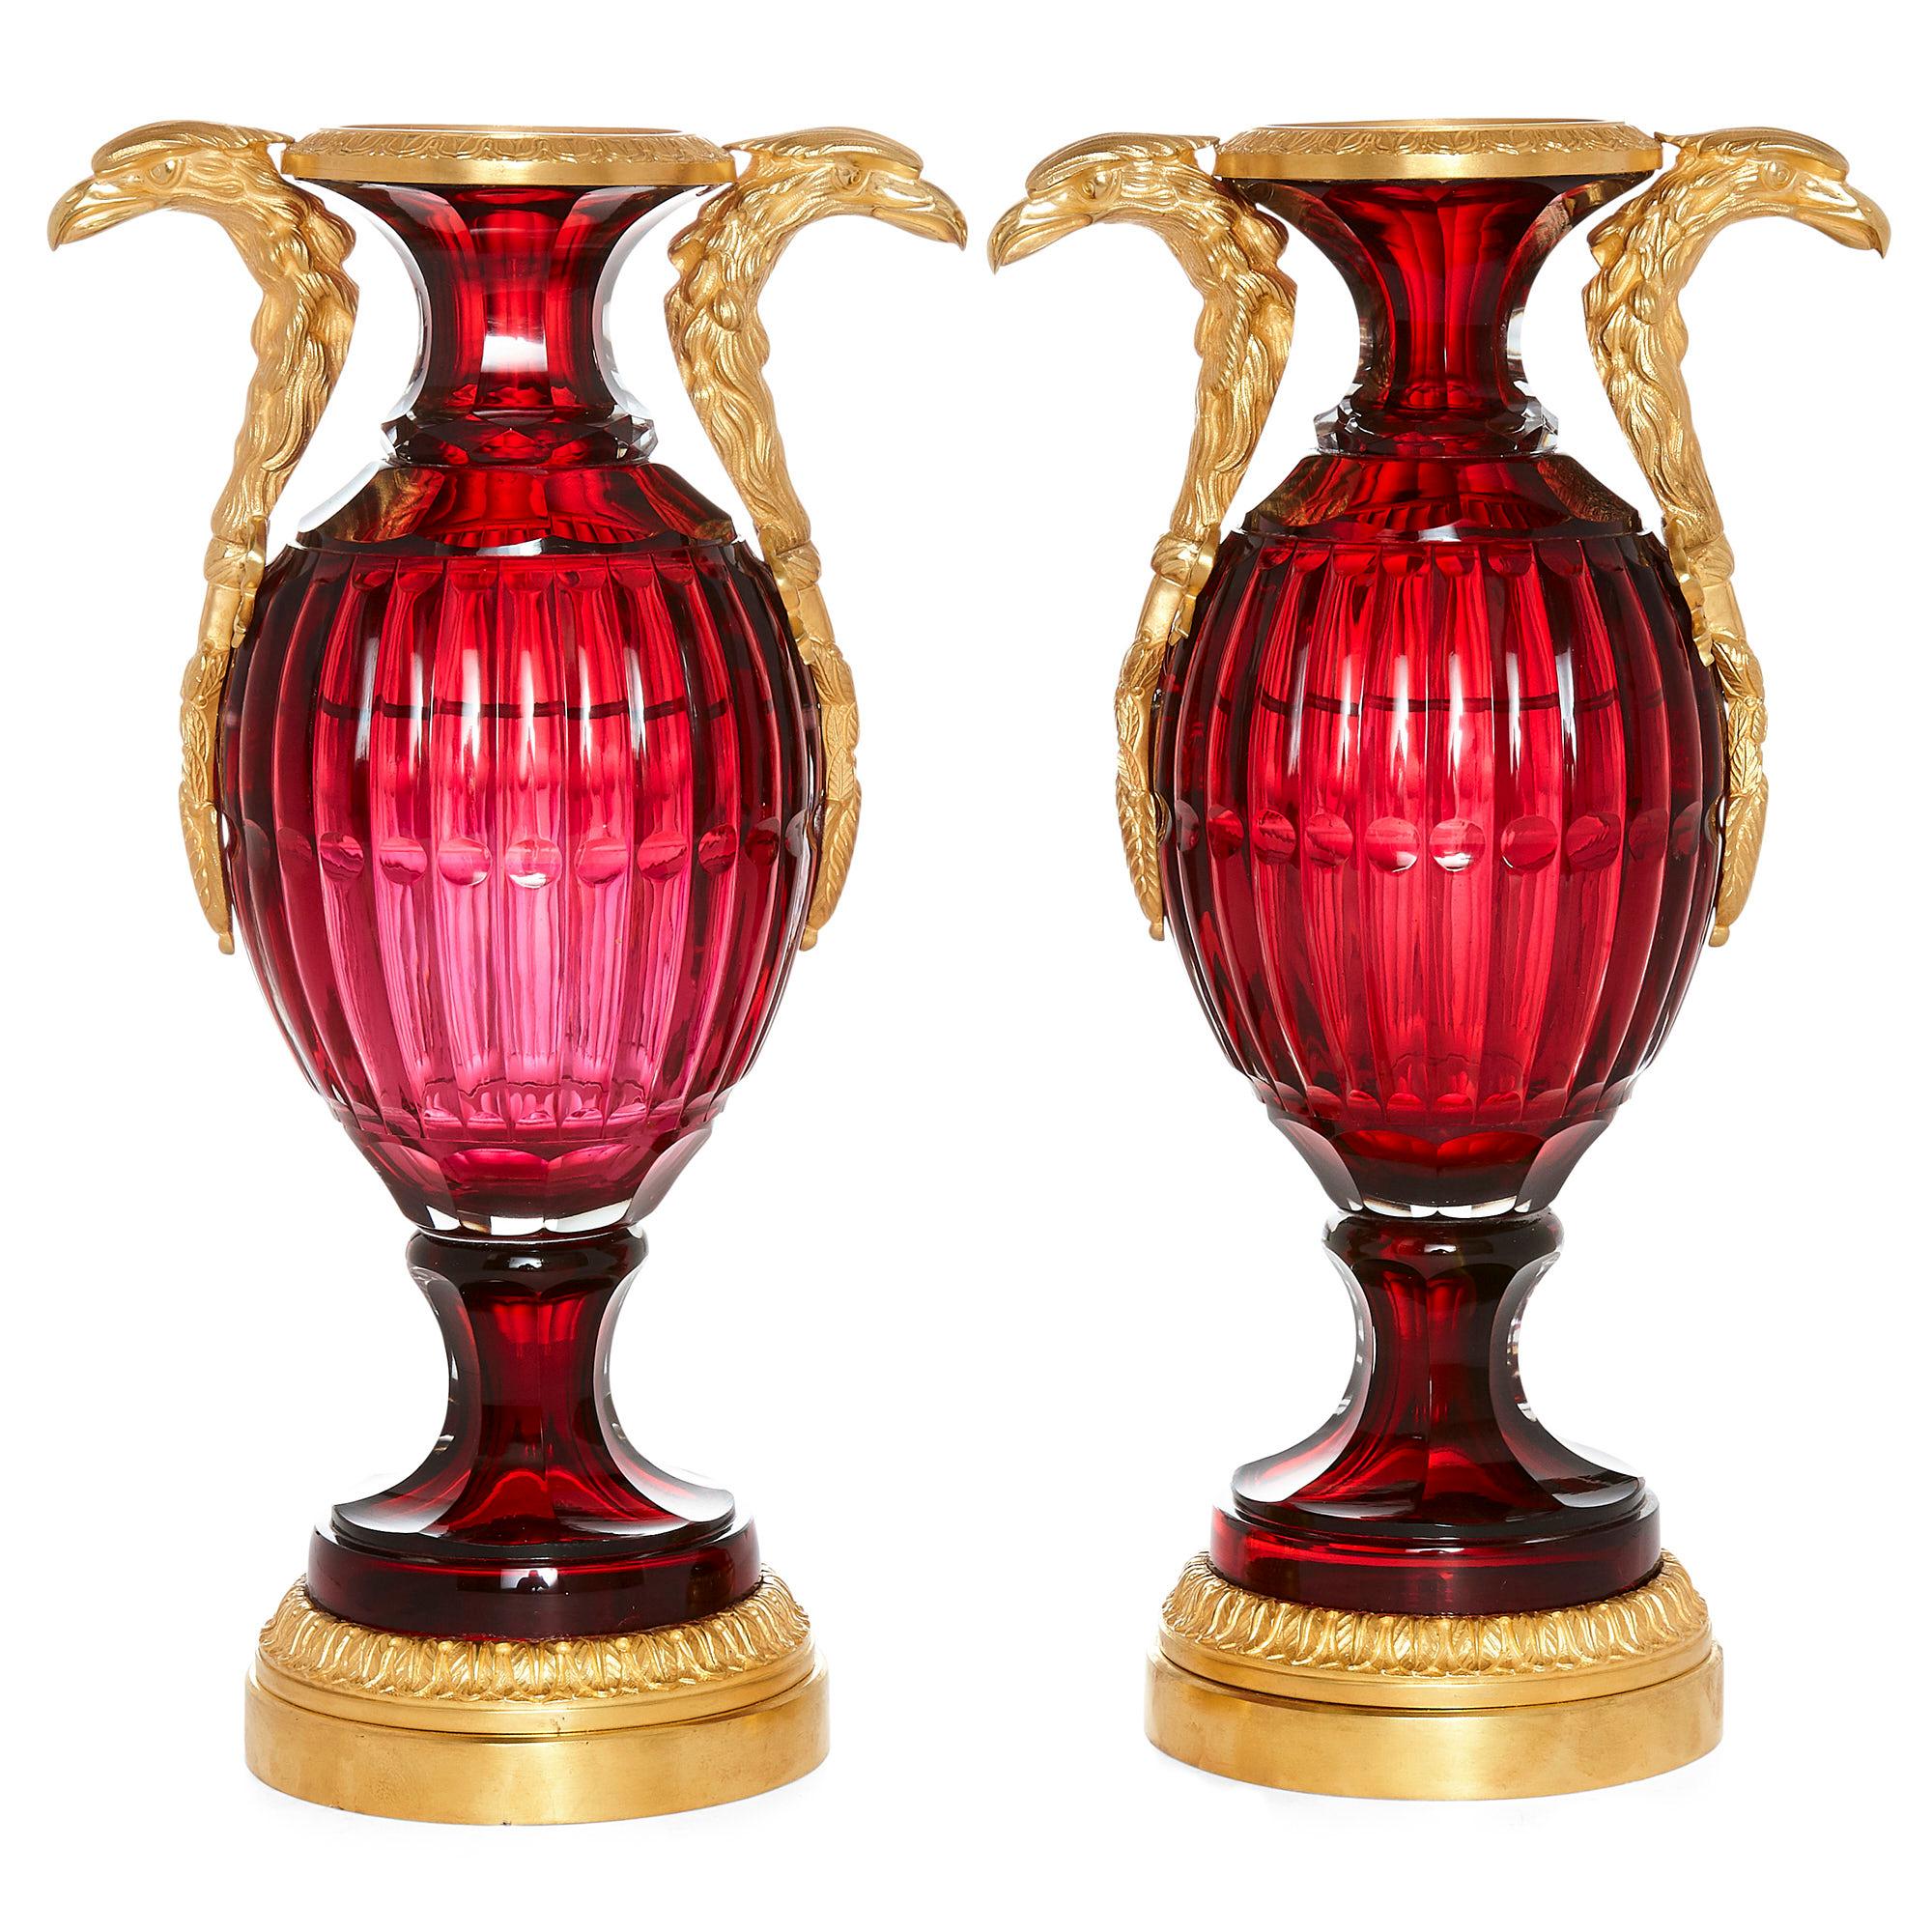 Deux vases russes de style néoclassique en verre taillé et bronze doré,
Russe, 20ème siècle
Dimensions : Hauteur 37cm, largeur 20cm, profondeur 13.5cm

Chaque vase a un corps ovoïde en verre taillé de couleur rubis et un col évasé. Ils sont montés